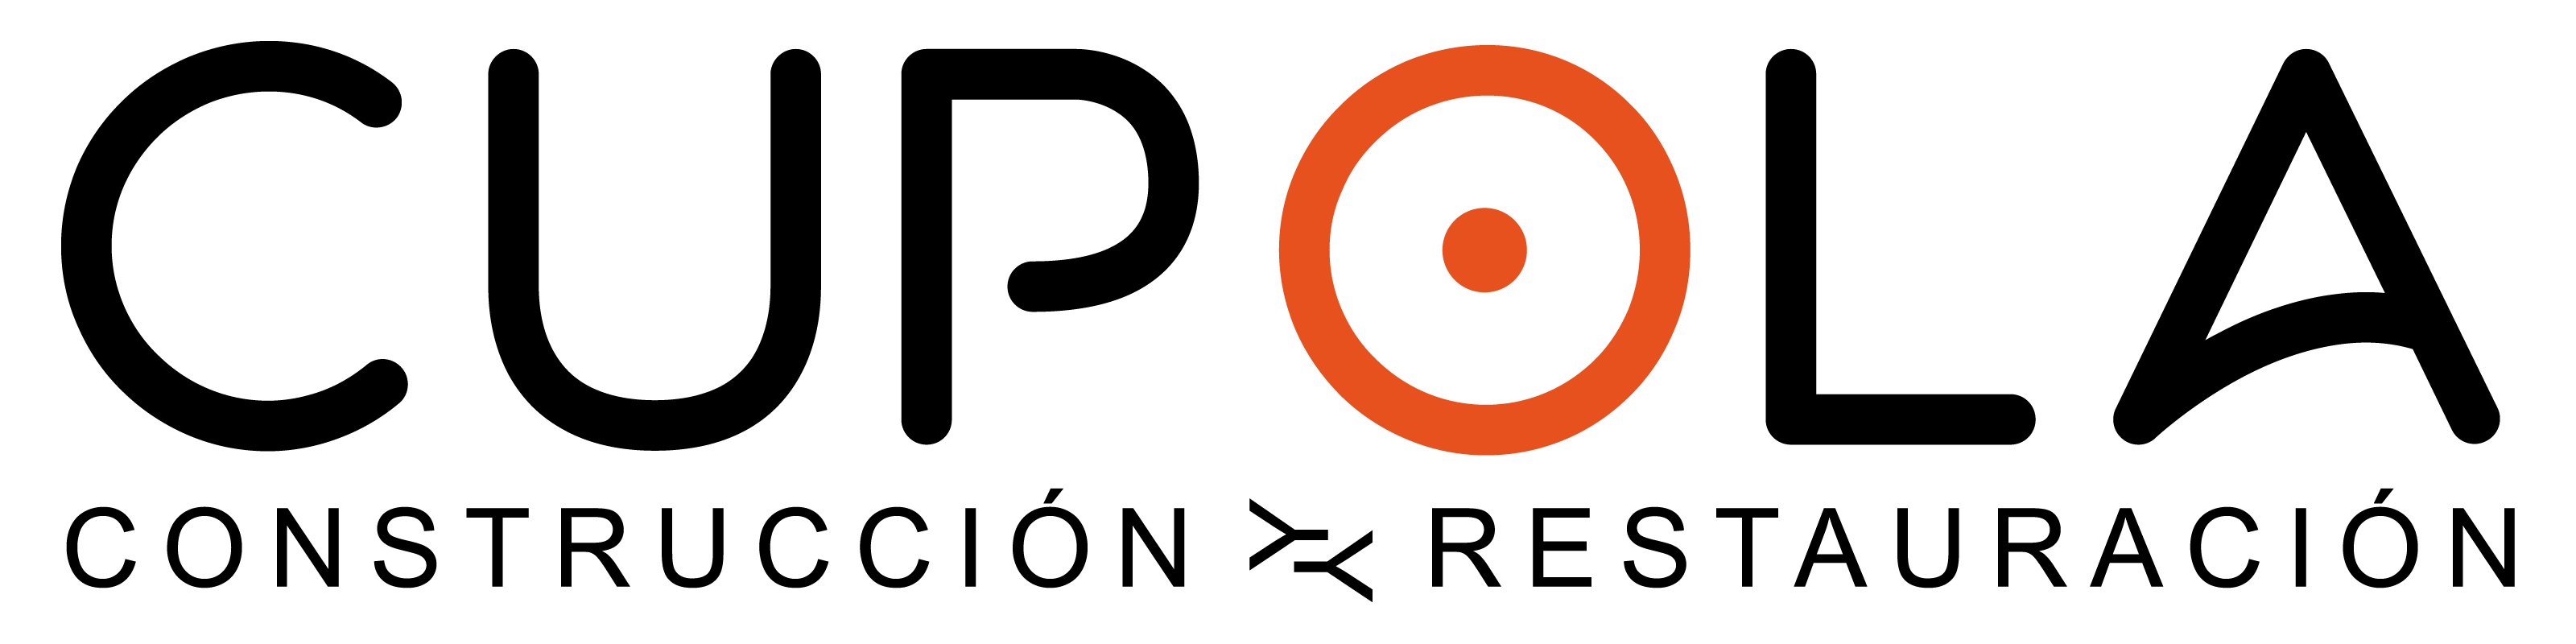 Logo Cpola 203200jpg